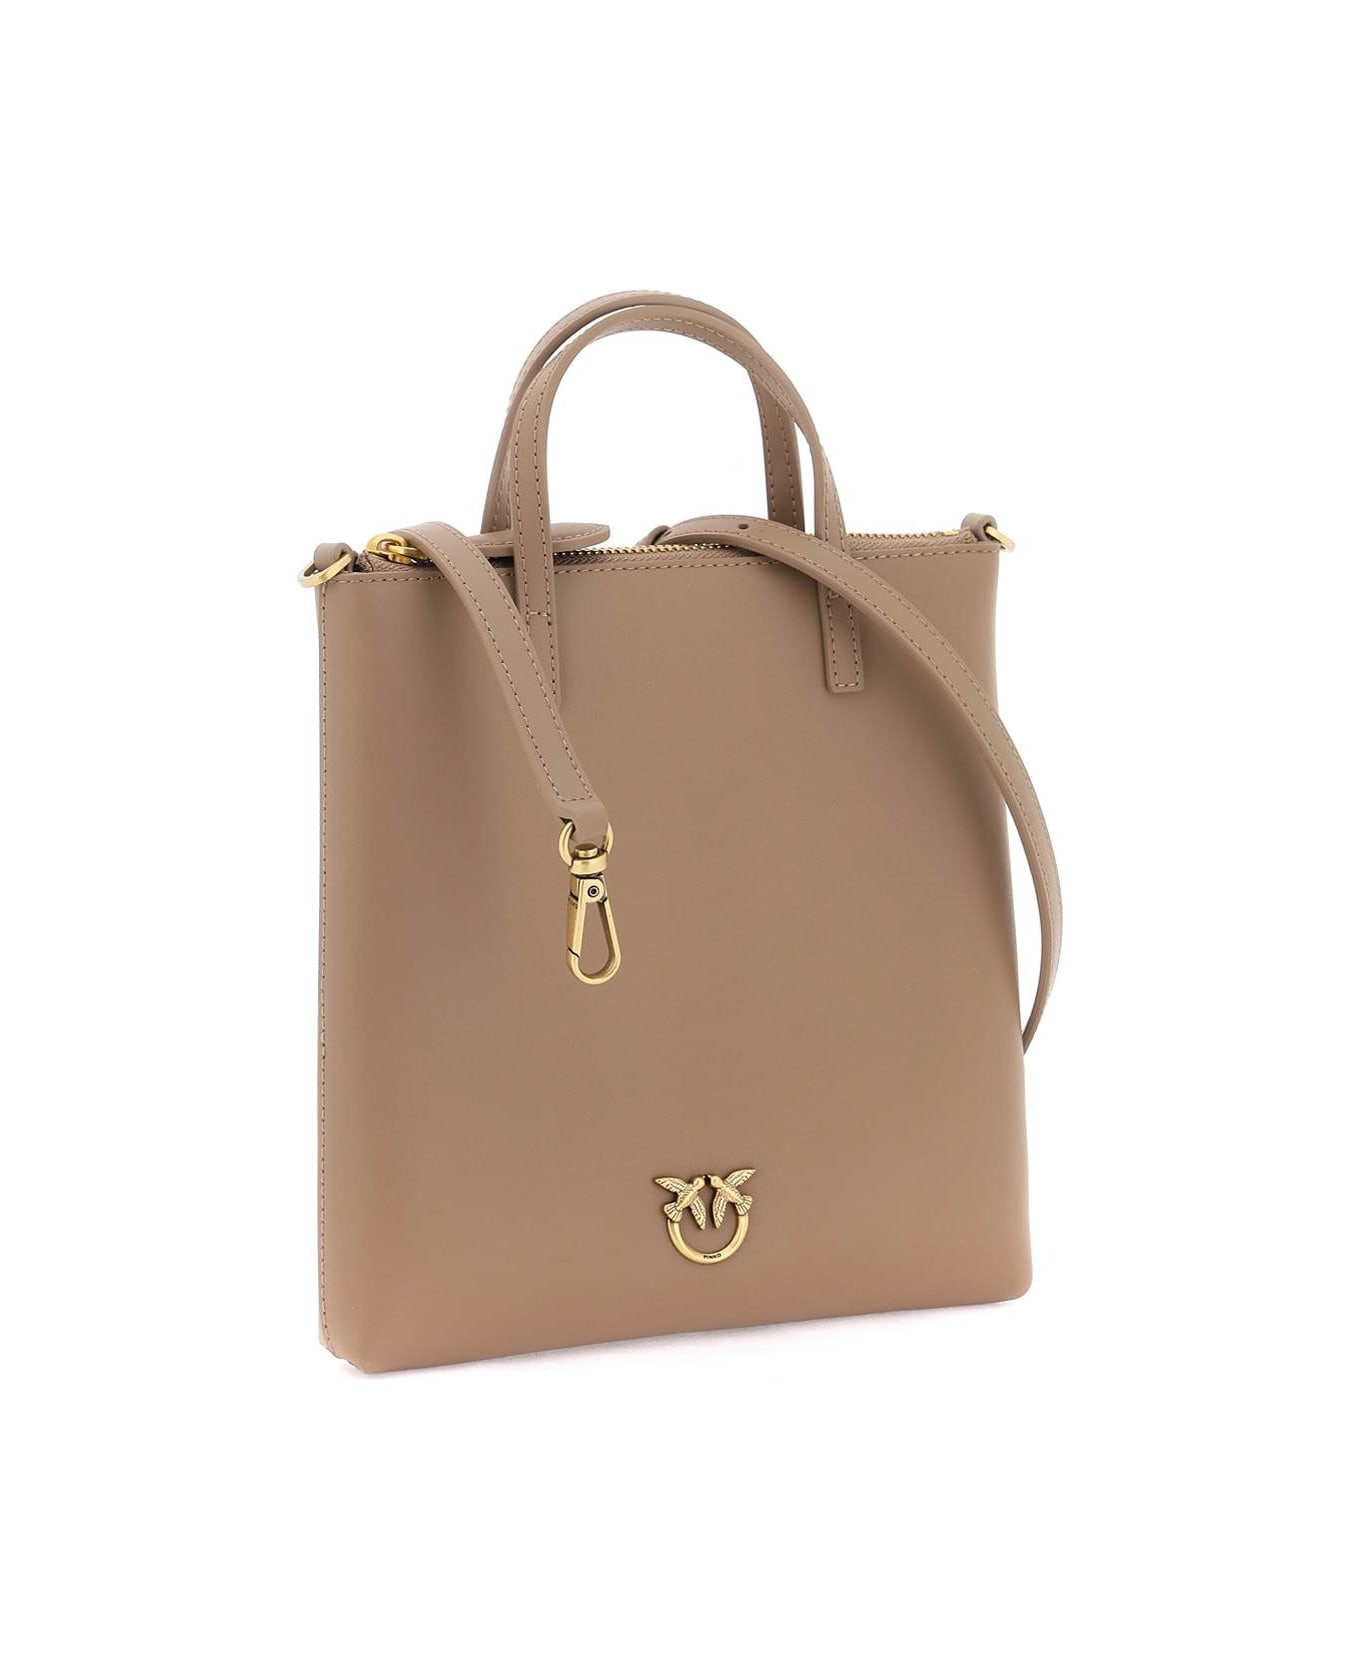 Pinko Leather Mini Tote Bag - BISCOTTO ZENZERO ANTIQUE GOLD (Brown)